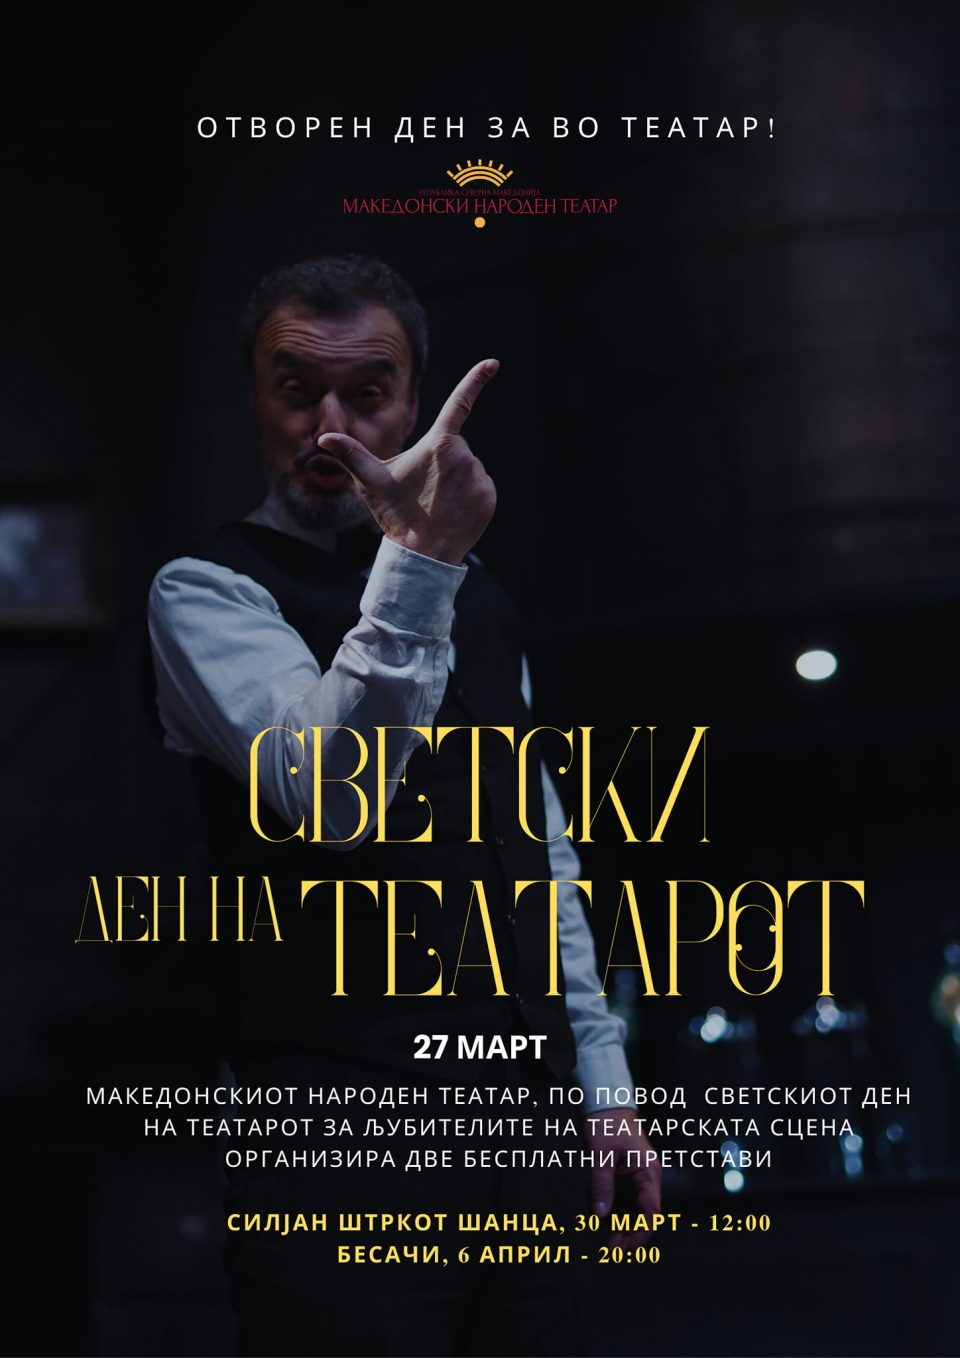 „Силјан Штркот шанца“ на 30 март и „Бесачи“ на 6 април во МНТ ќе биде бесплатни по повод Светскиот ден на театарот